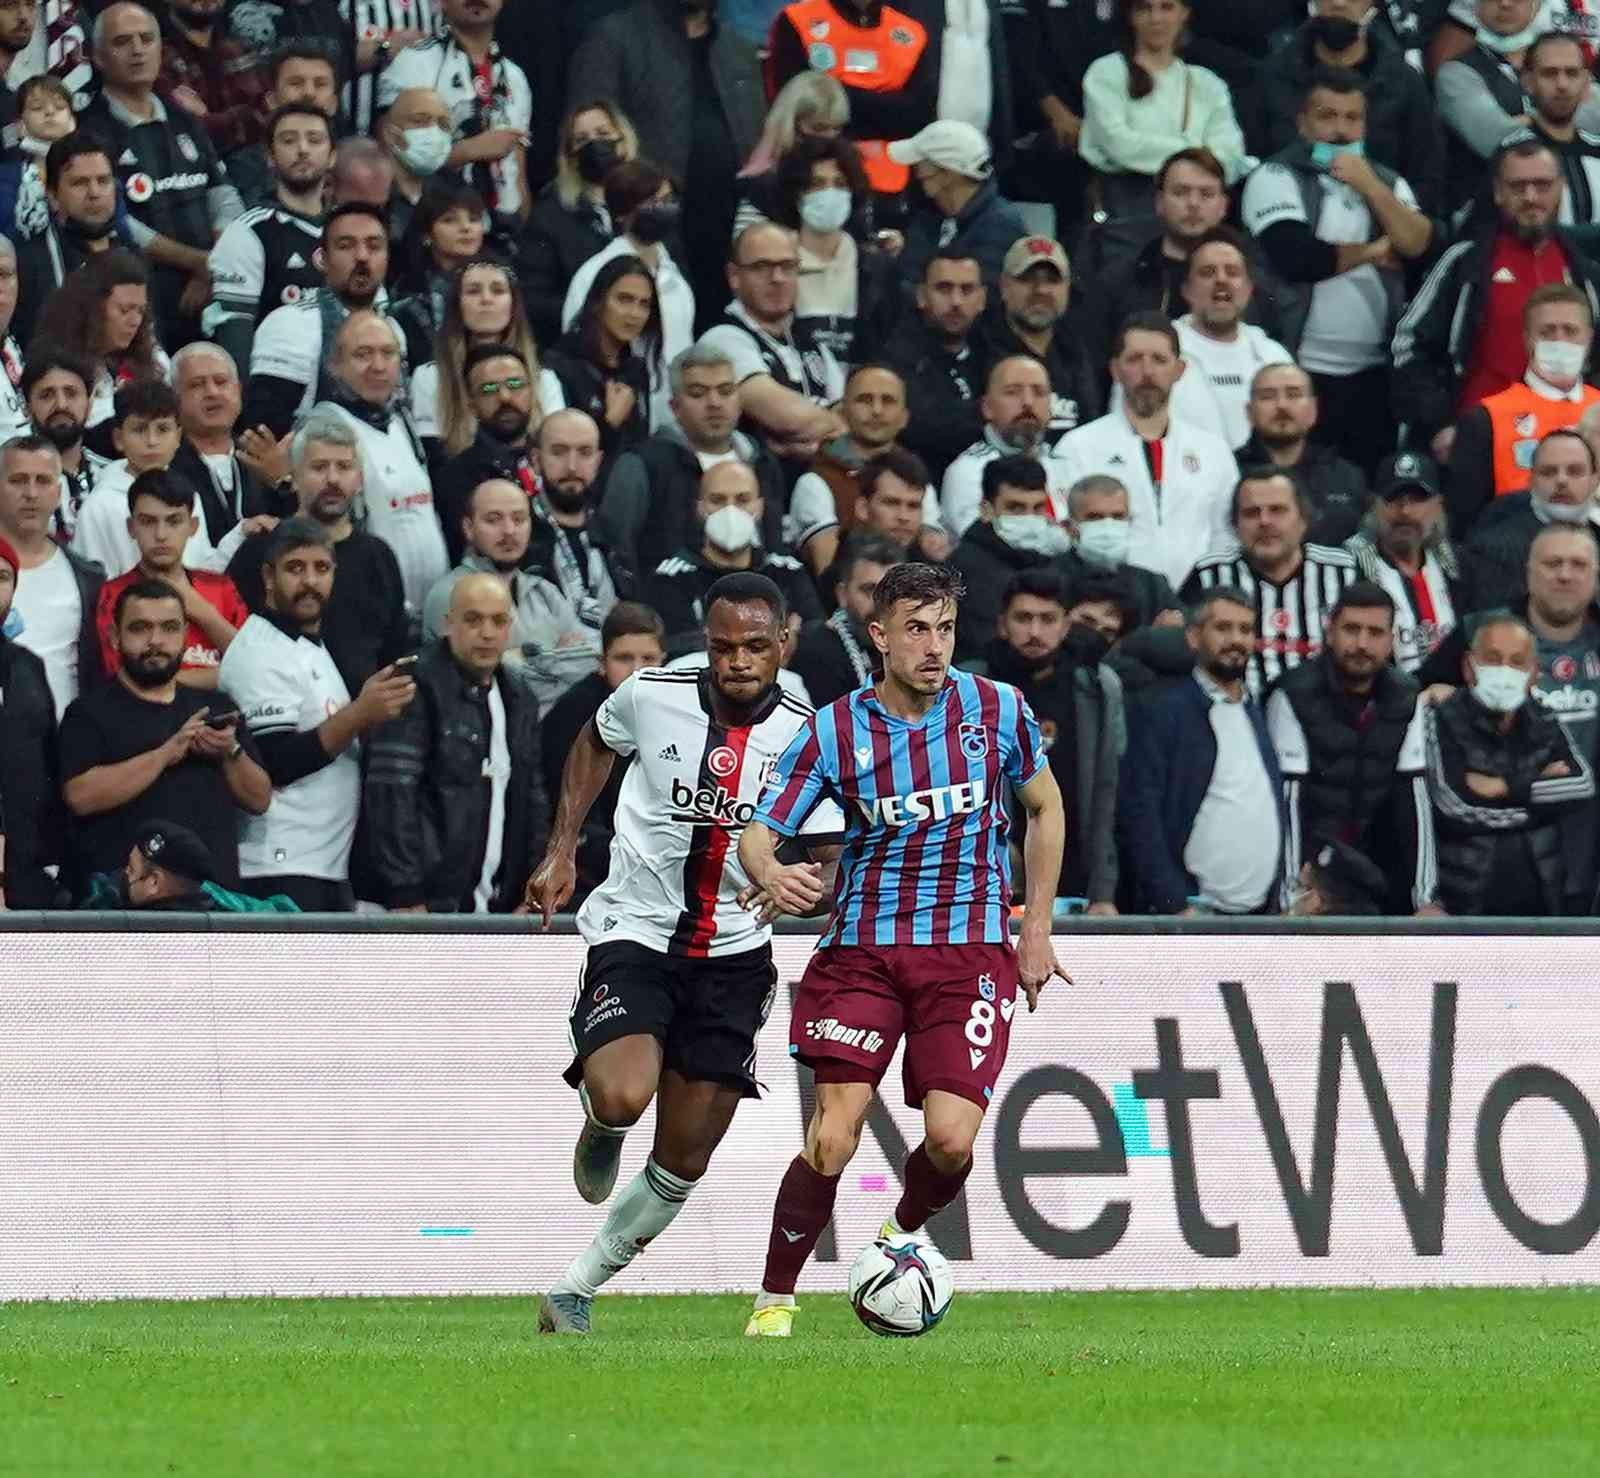 Spor Toto Süper Lig: Beşiktaş: 0 - Trabzonspor: 1 (İlk yarı) #istanbul